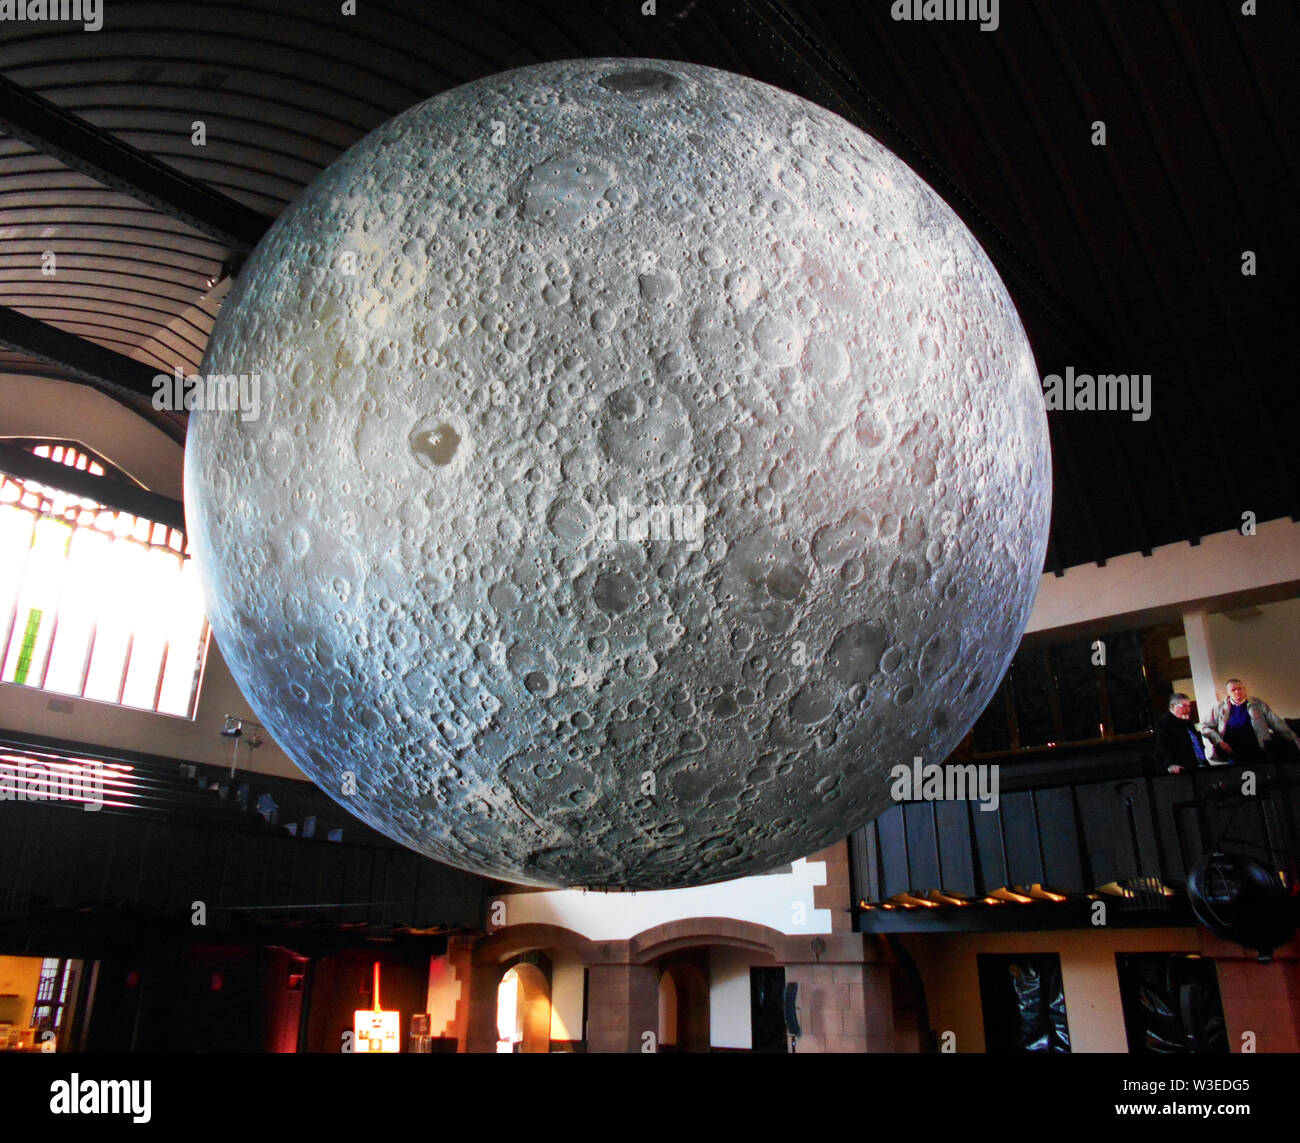 Diese massive Kunstwerk ist aufgerufen, das Museum des Mondes, und ist 7 Meter im Durchmesser und ist aus vielen, genaue Bilder von der NASA von der Mondoberfläche gemacht und ist im Maßstab 1:500.000. Jeder Zentimeter des intern beleuchtet kugelförmige Skulptur stellt 5 km der Mondoberfläche. Der Künstler ist Luke Jerram und dieses Foto ist von Glasgow, wo sie auf Anzeige im Jahr 2018 war. ALAMY/Alan Wylie © Stockfoto